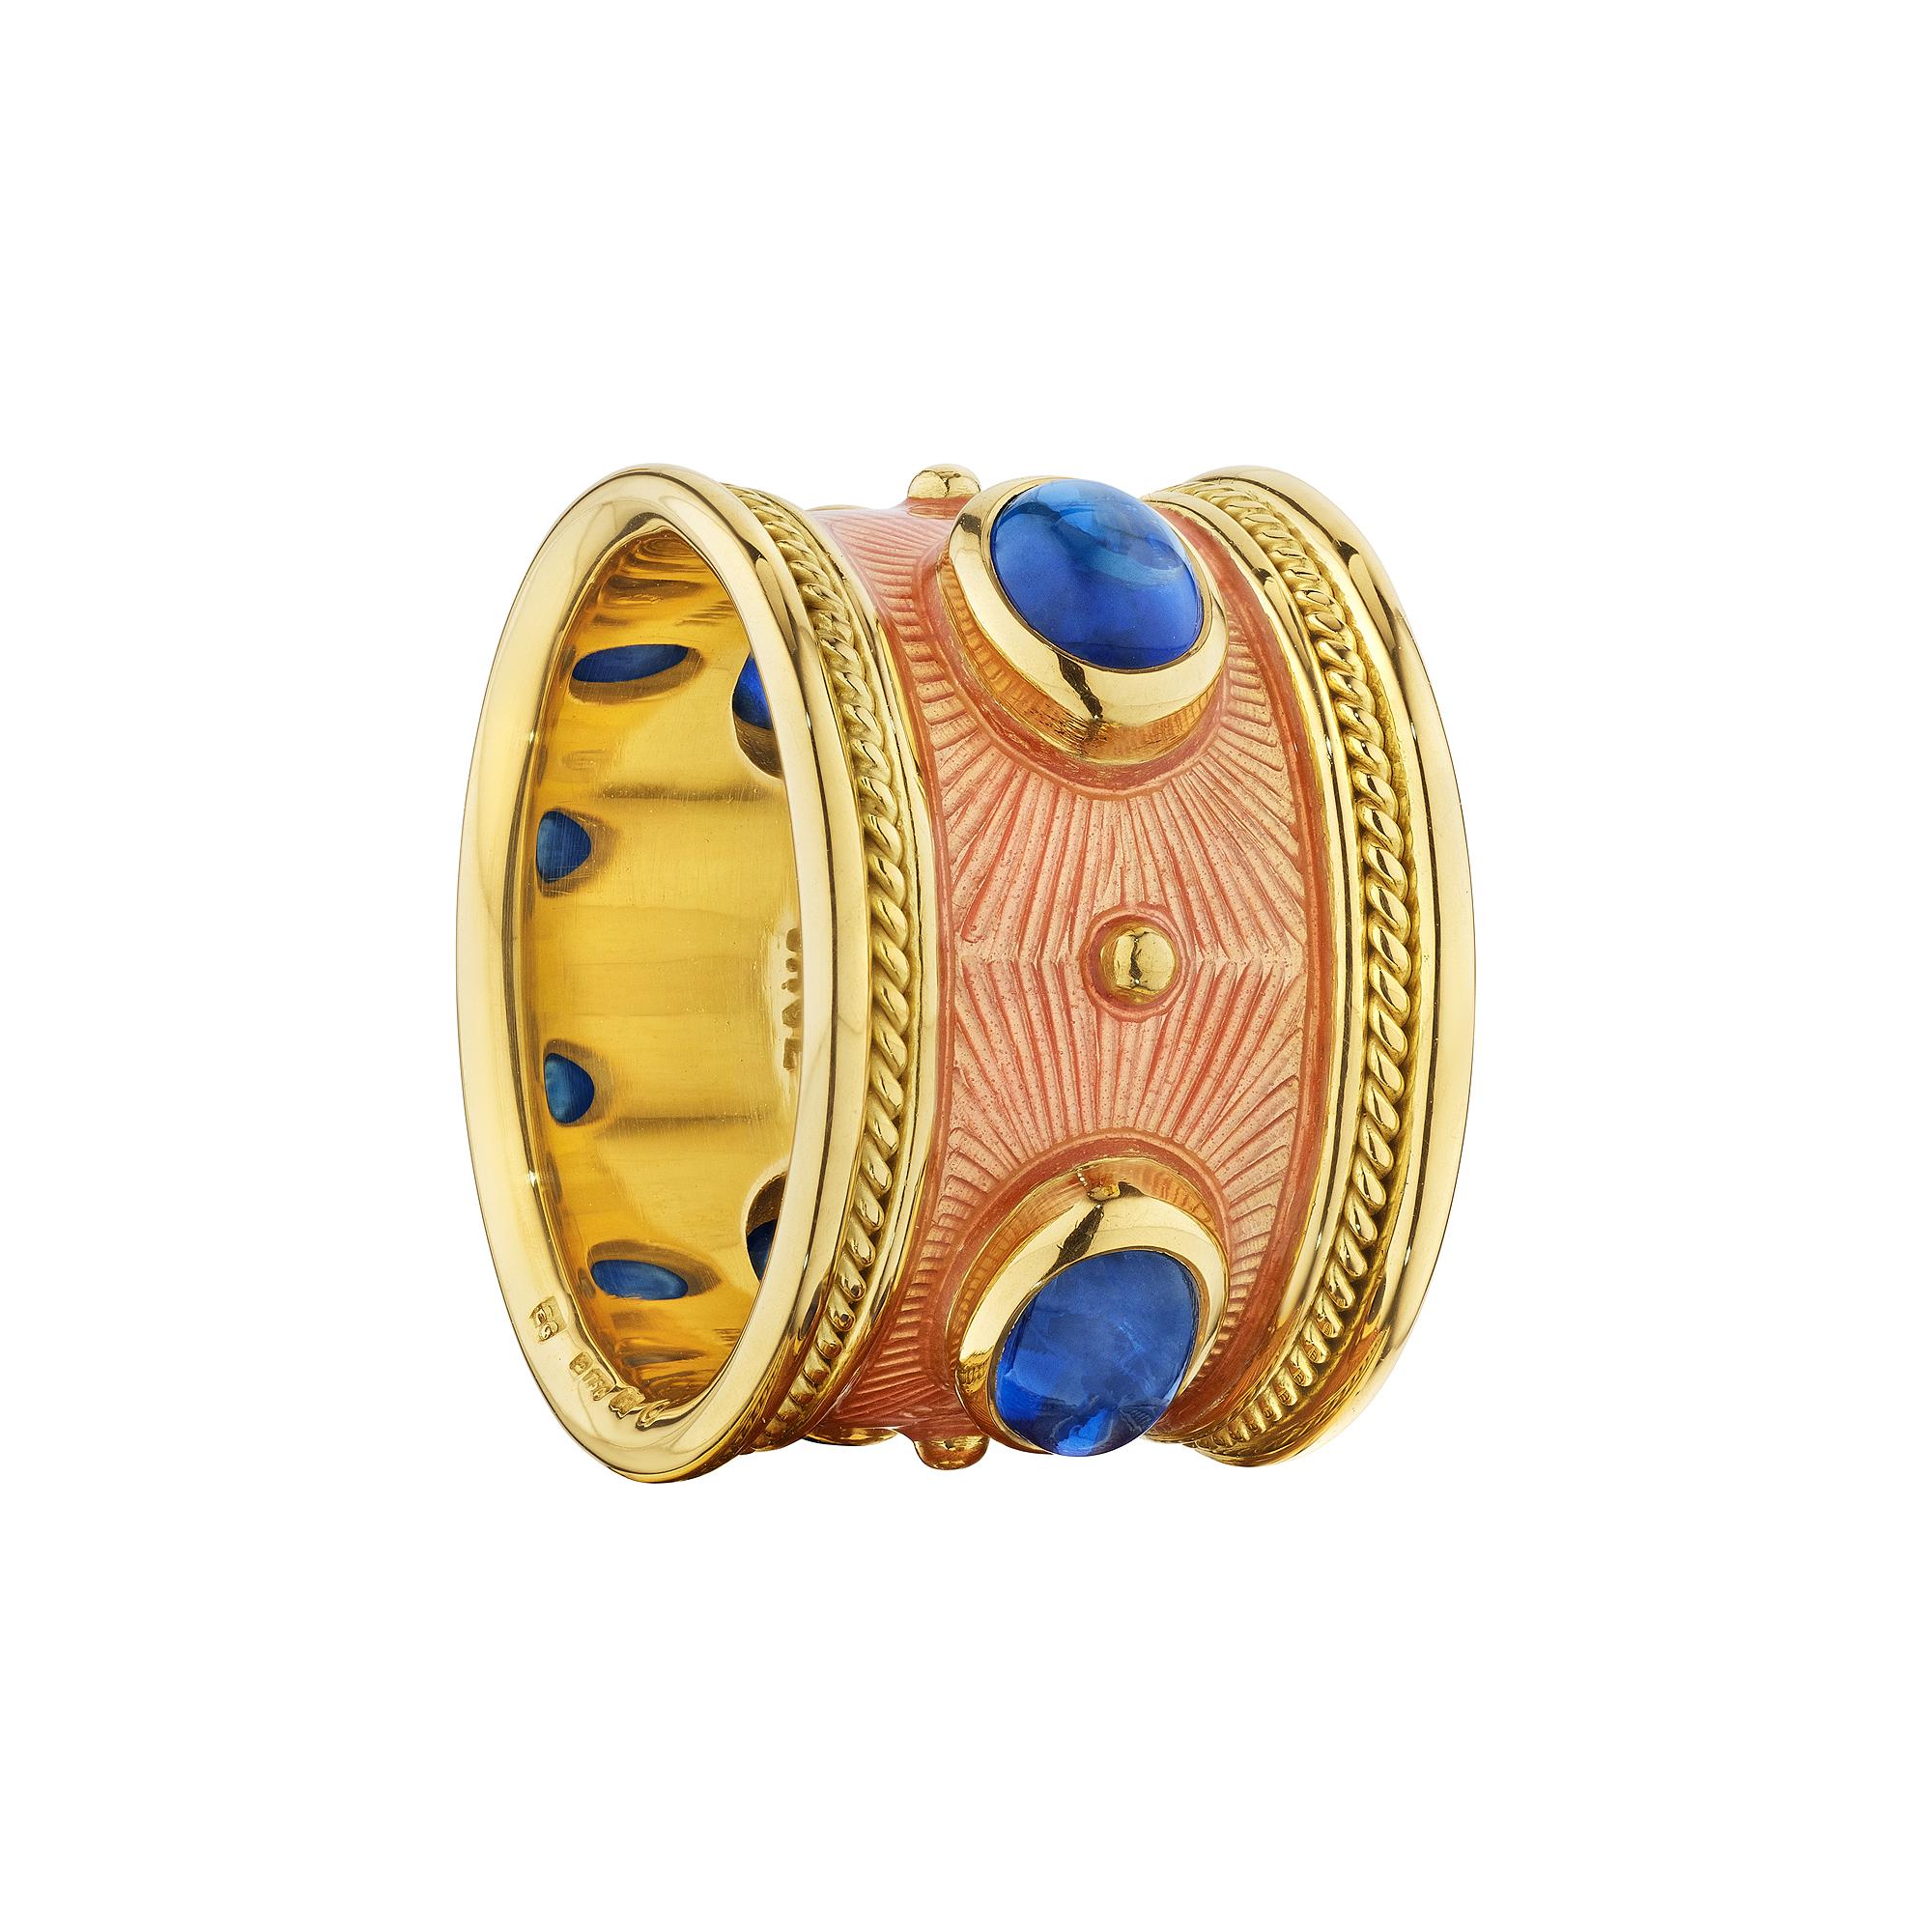 Lebendige blaue Cabochon-Saphire im Ovalschliff im Kontrast zu üppiger lachsfarbener Emaille lassen diesen Ring aus 18-karätigem Gelbgold von Elizabeth Gage vor unerwarteter Farbe strotzen.  Ungefähres Gewicht des Saphirs 2,50 Karat.  Um 2000. 